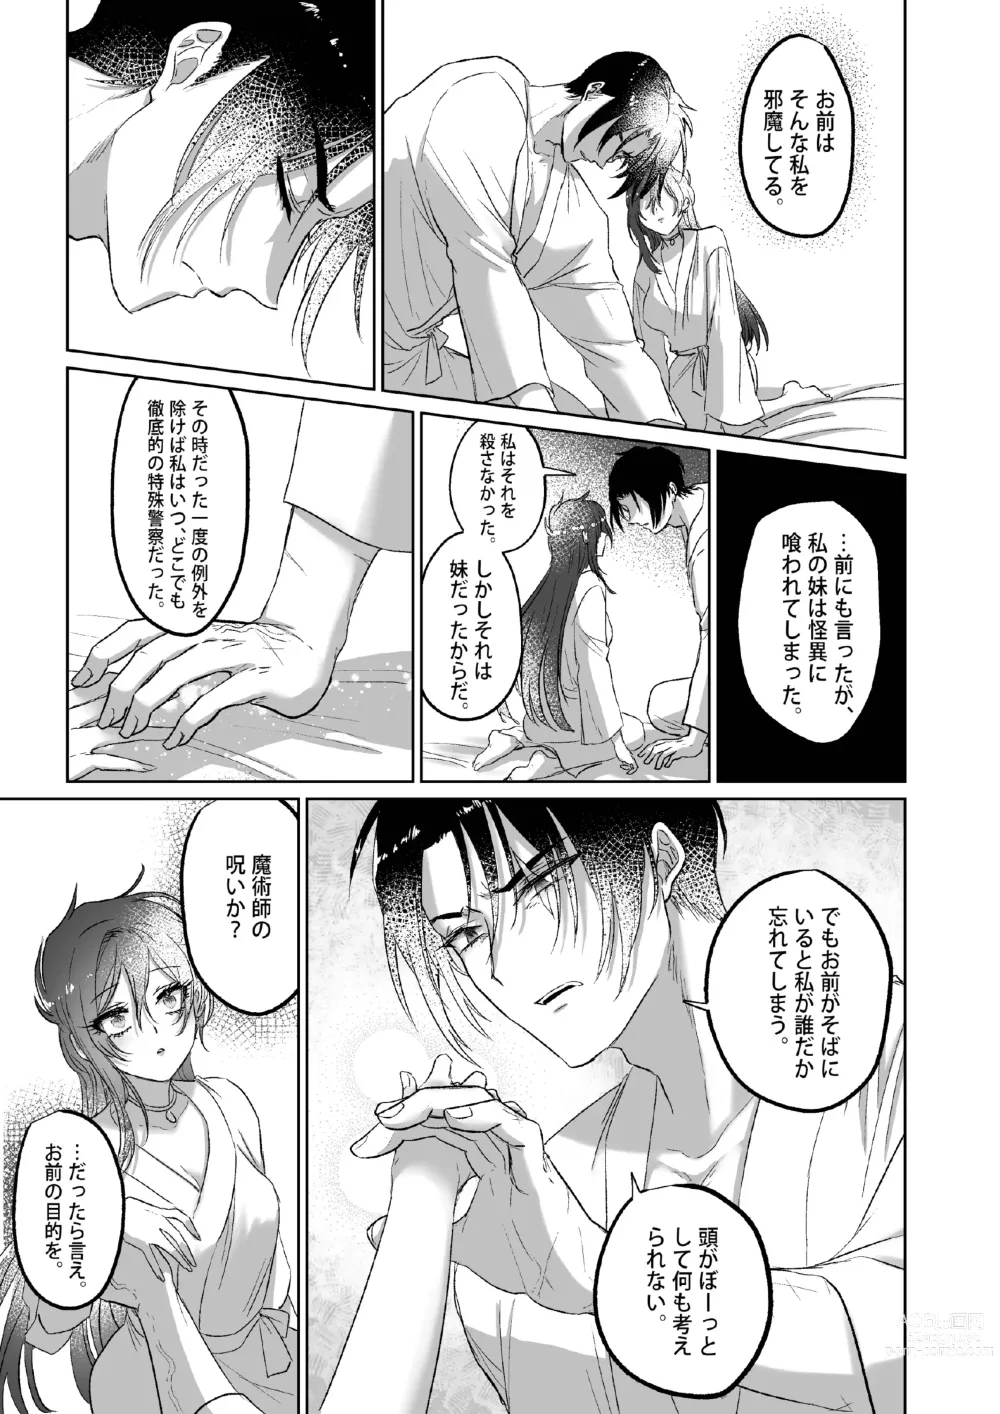 Page 64 of doujinshi Kπ ~Kouankeisatsu to Ikoku no Majo no Futari~